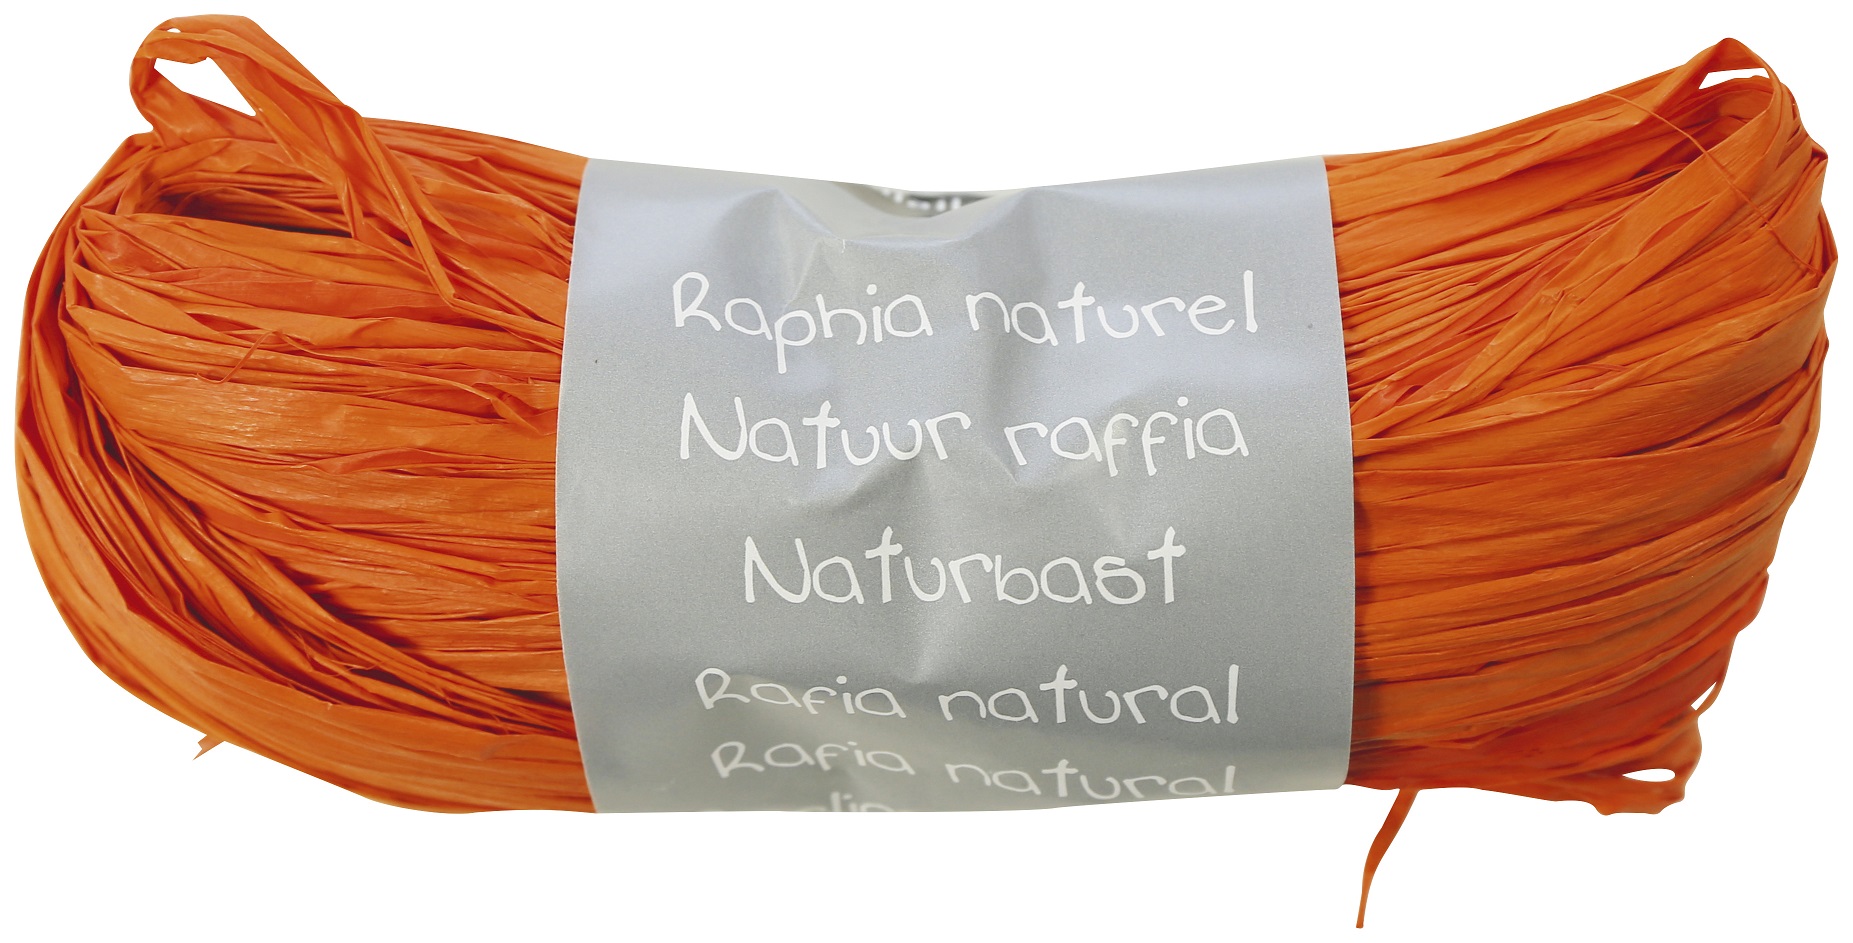 raphia naturel orange